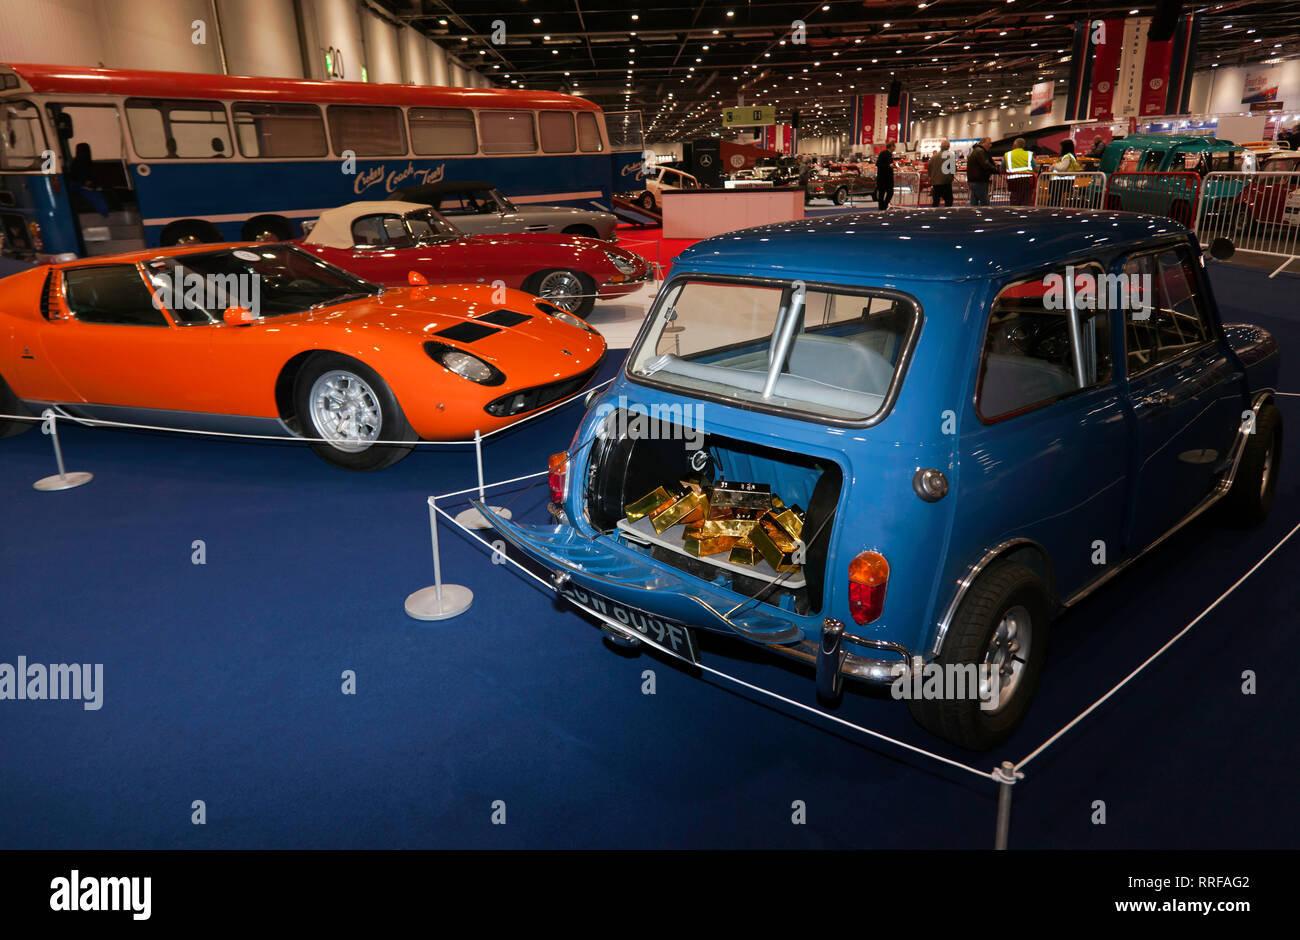 Display speciale di veicoli che presenti nel iconico British film " The Italian Job" sul display in corrispondenza del 2019 London Classic Car Show Foto Stock